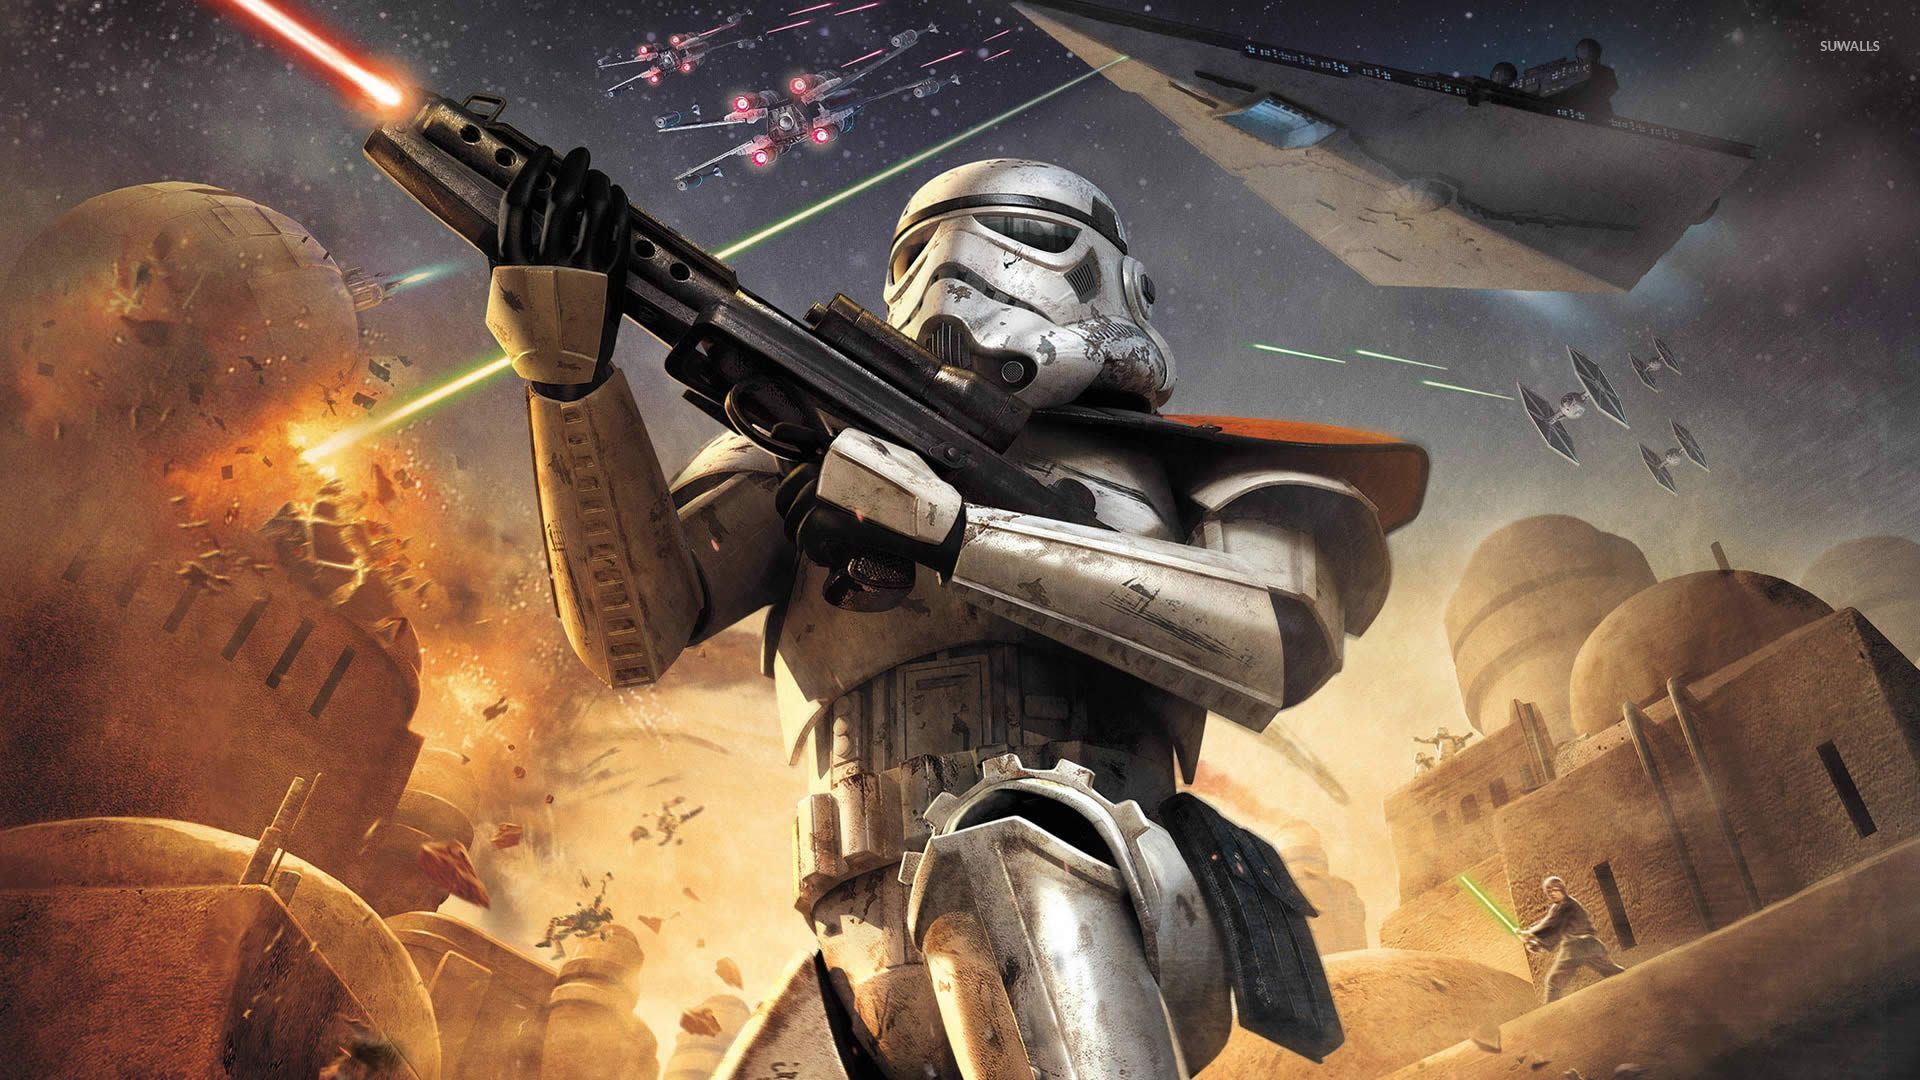 Star Wars Battlefront Elite Squadron Wallpaper Game